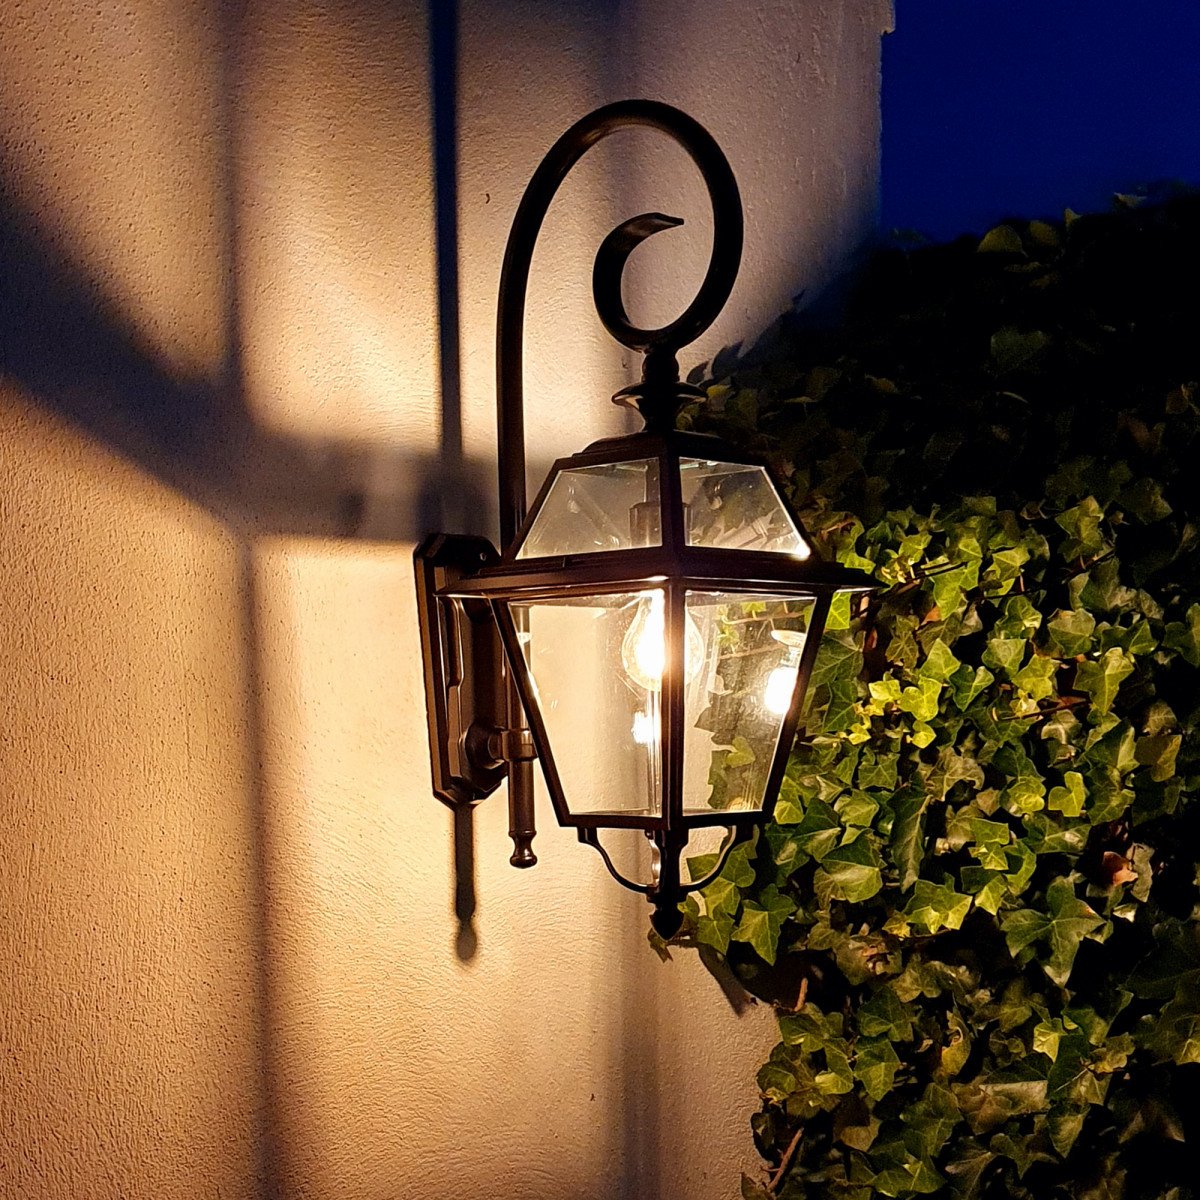 Lampe d'extérieur noire stylée, avec grande surface vitrée claire, une lanterne murale de luxe pour l'extérieur, épuré, classique, éclairage d'extérieur, KS Lighting